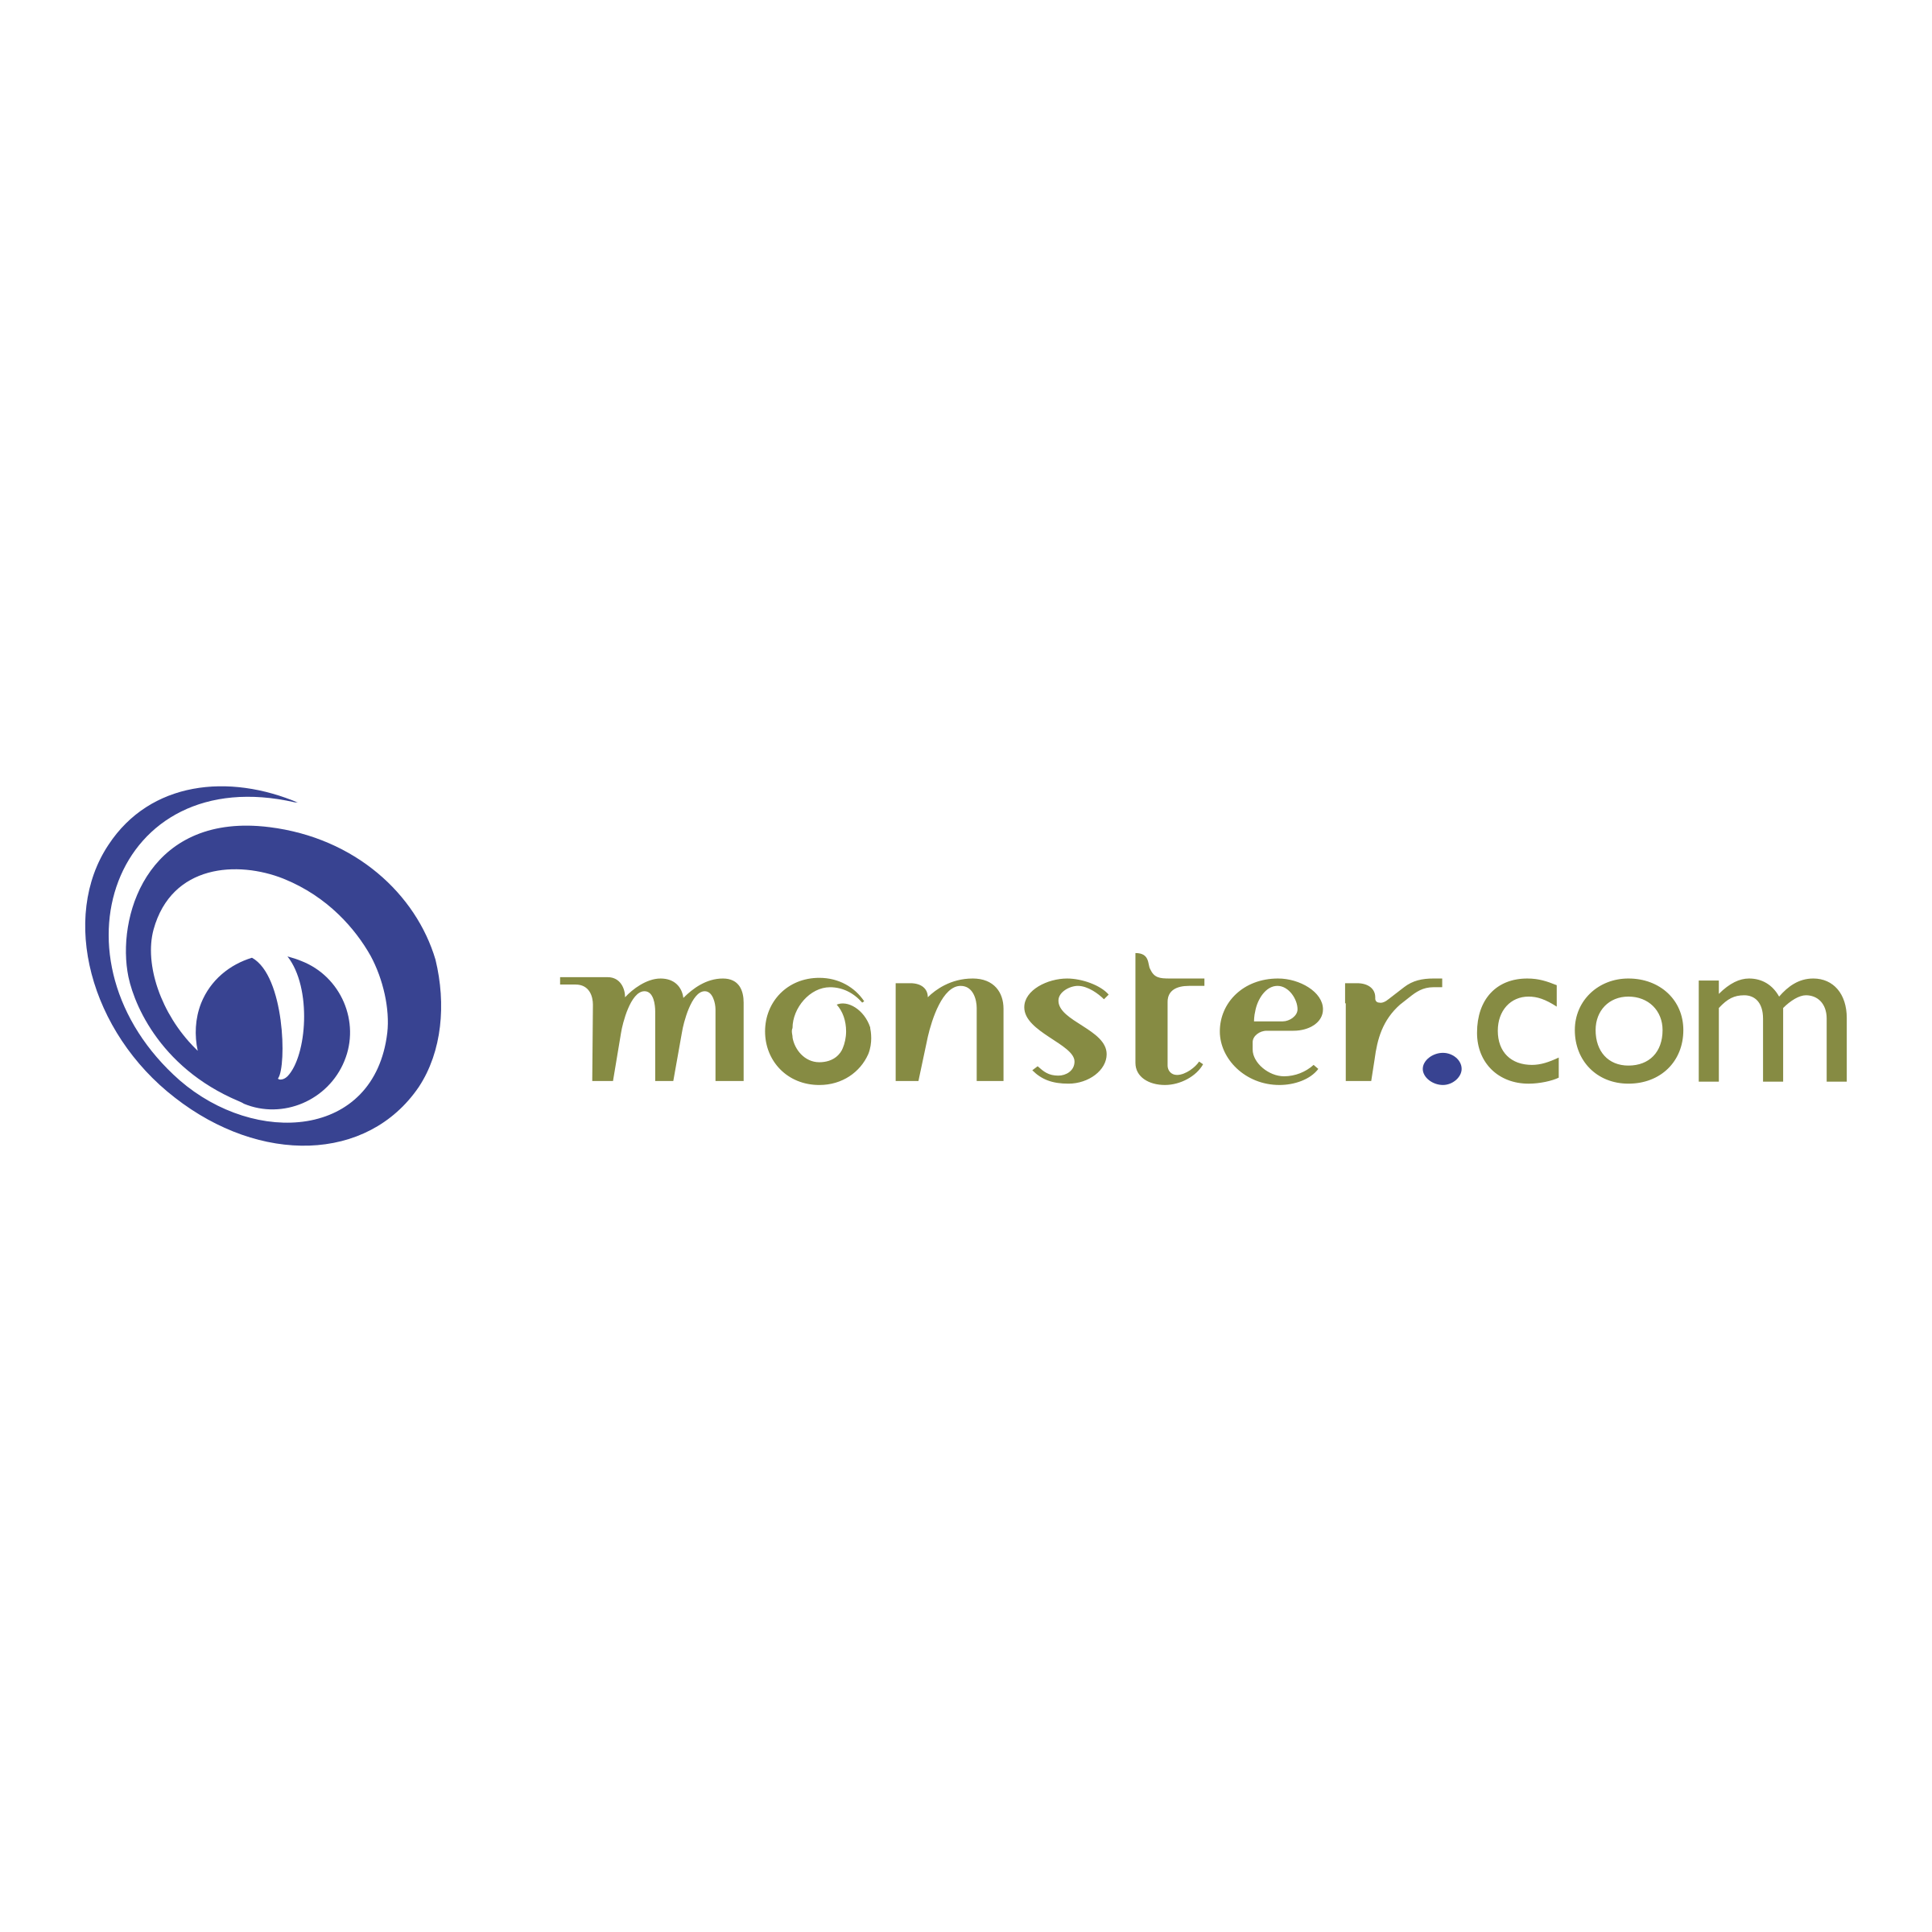 Monster.com Logo - Monster com Logo PNG Transparent & SVG Vector - Freebie Supply